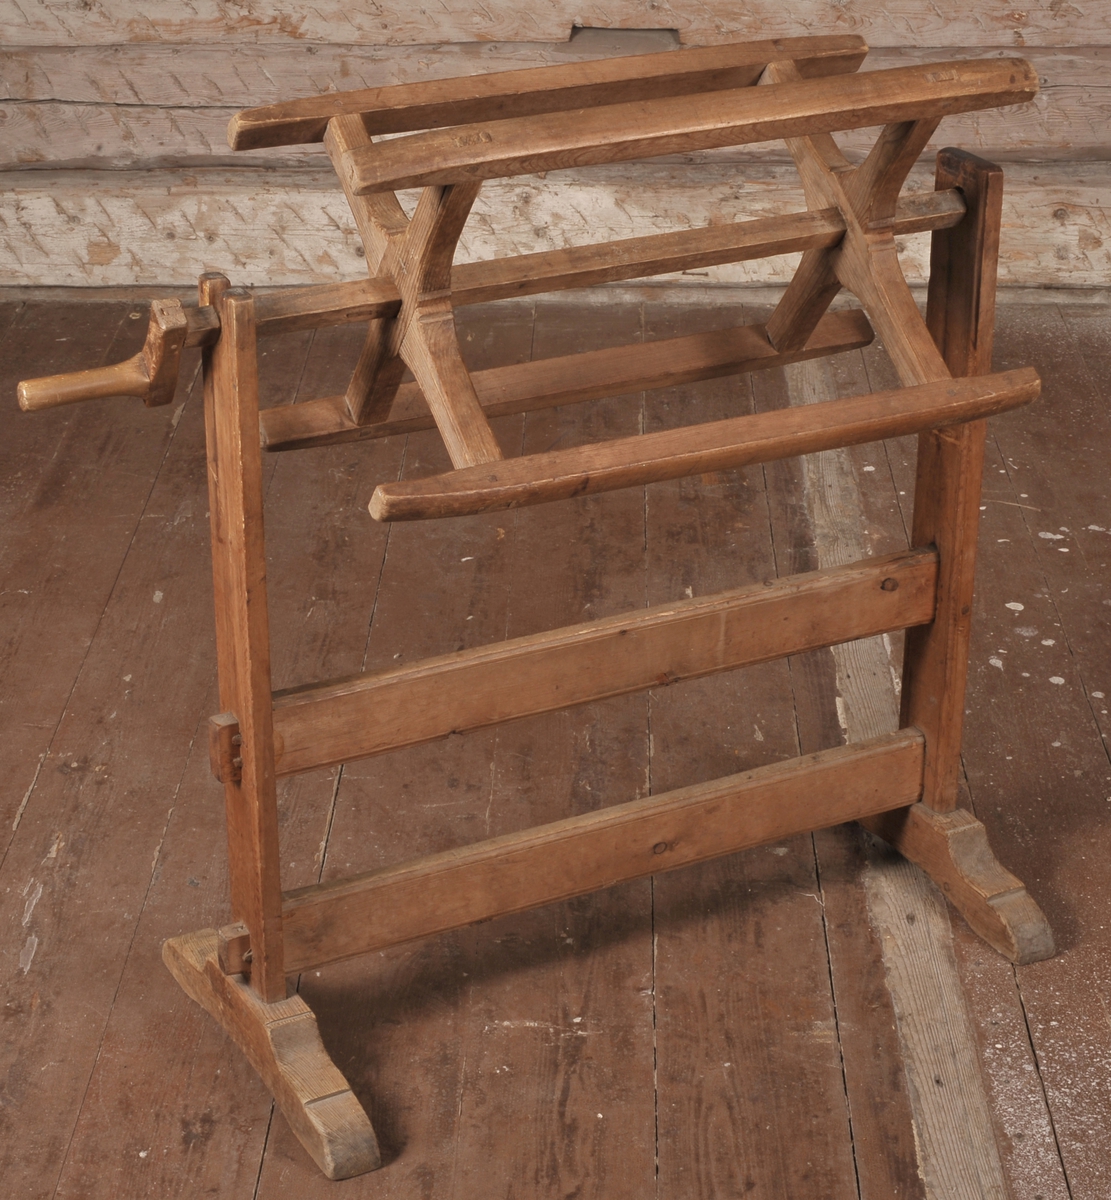 Denne garnvinnen, eller kabben, med stol, er laget i tre. Stolen er tappet sammen, og festet med trekiler og trenagler. Kabben kan tas av.